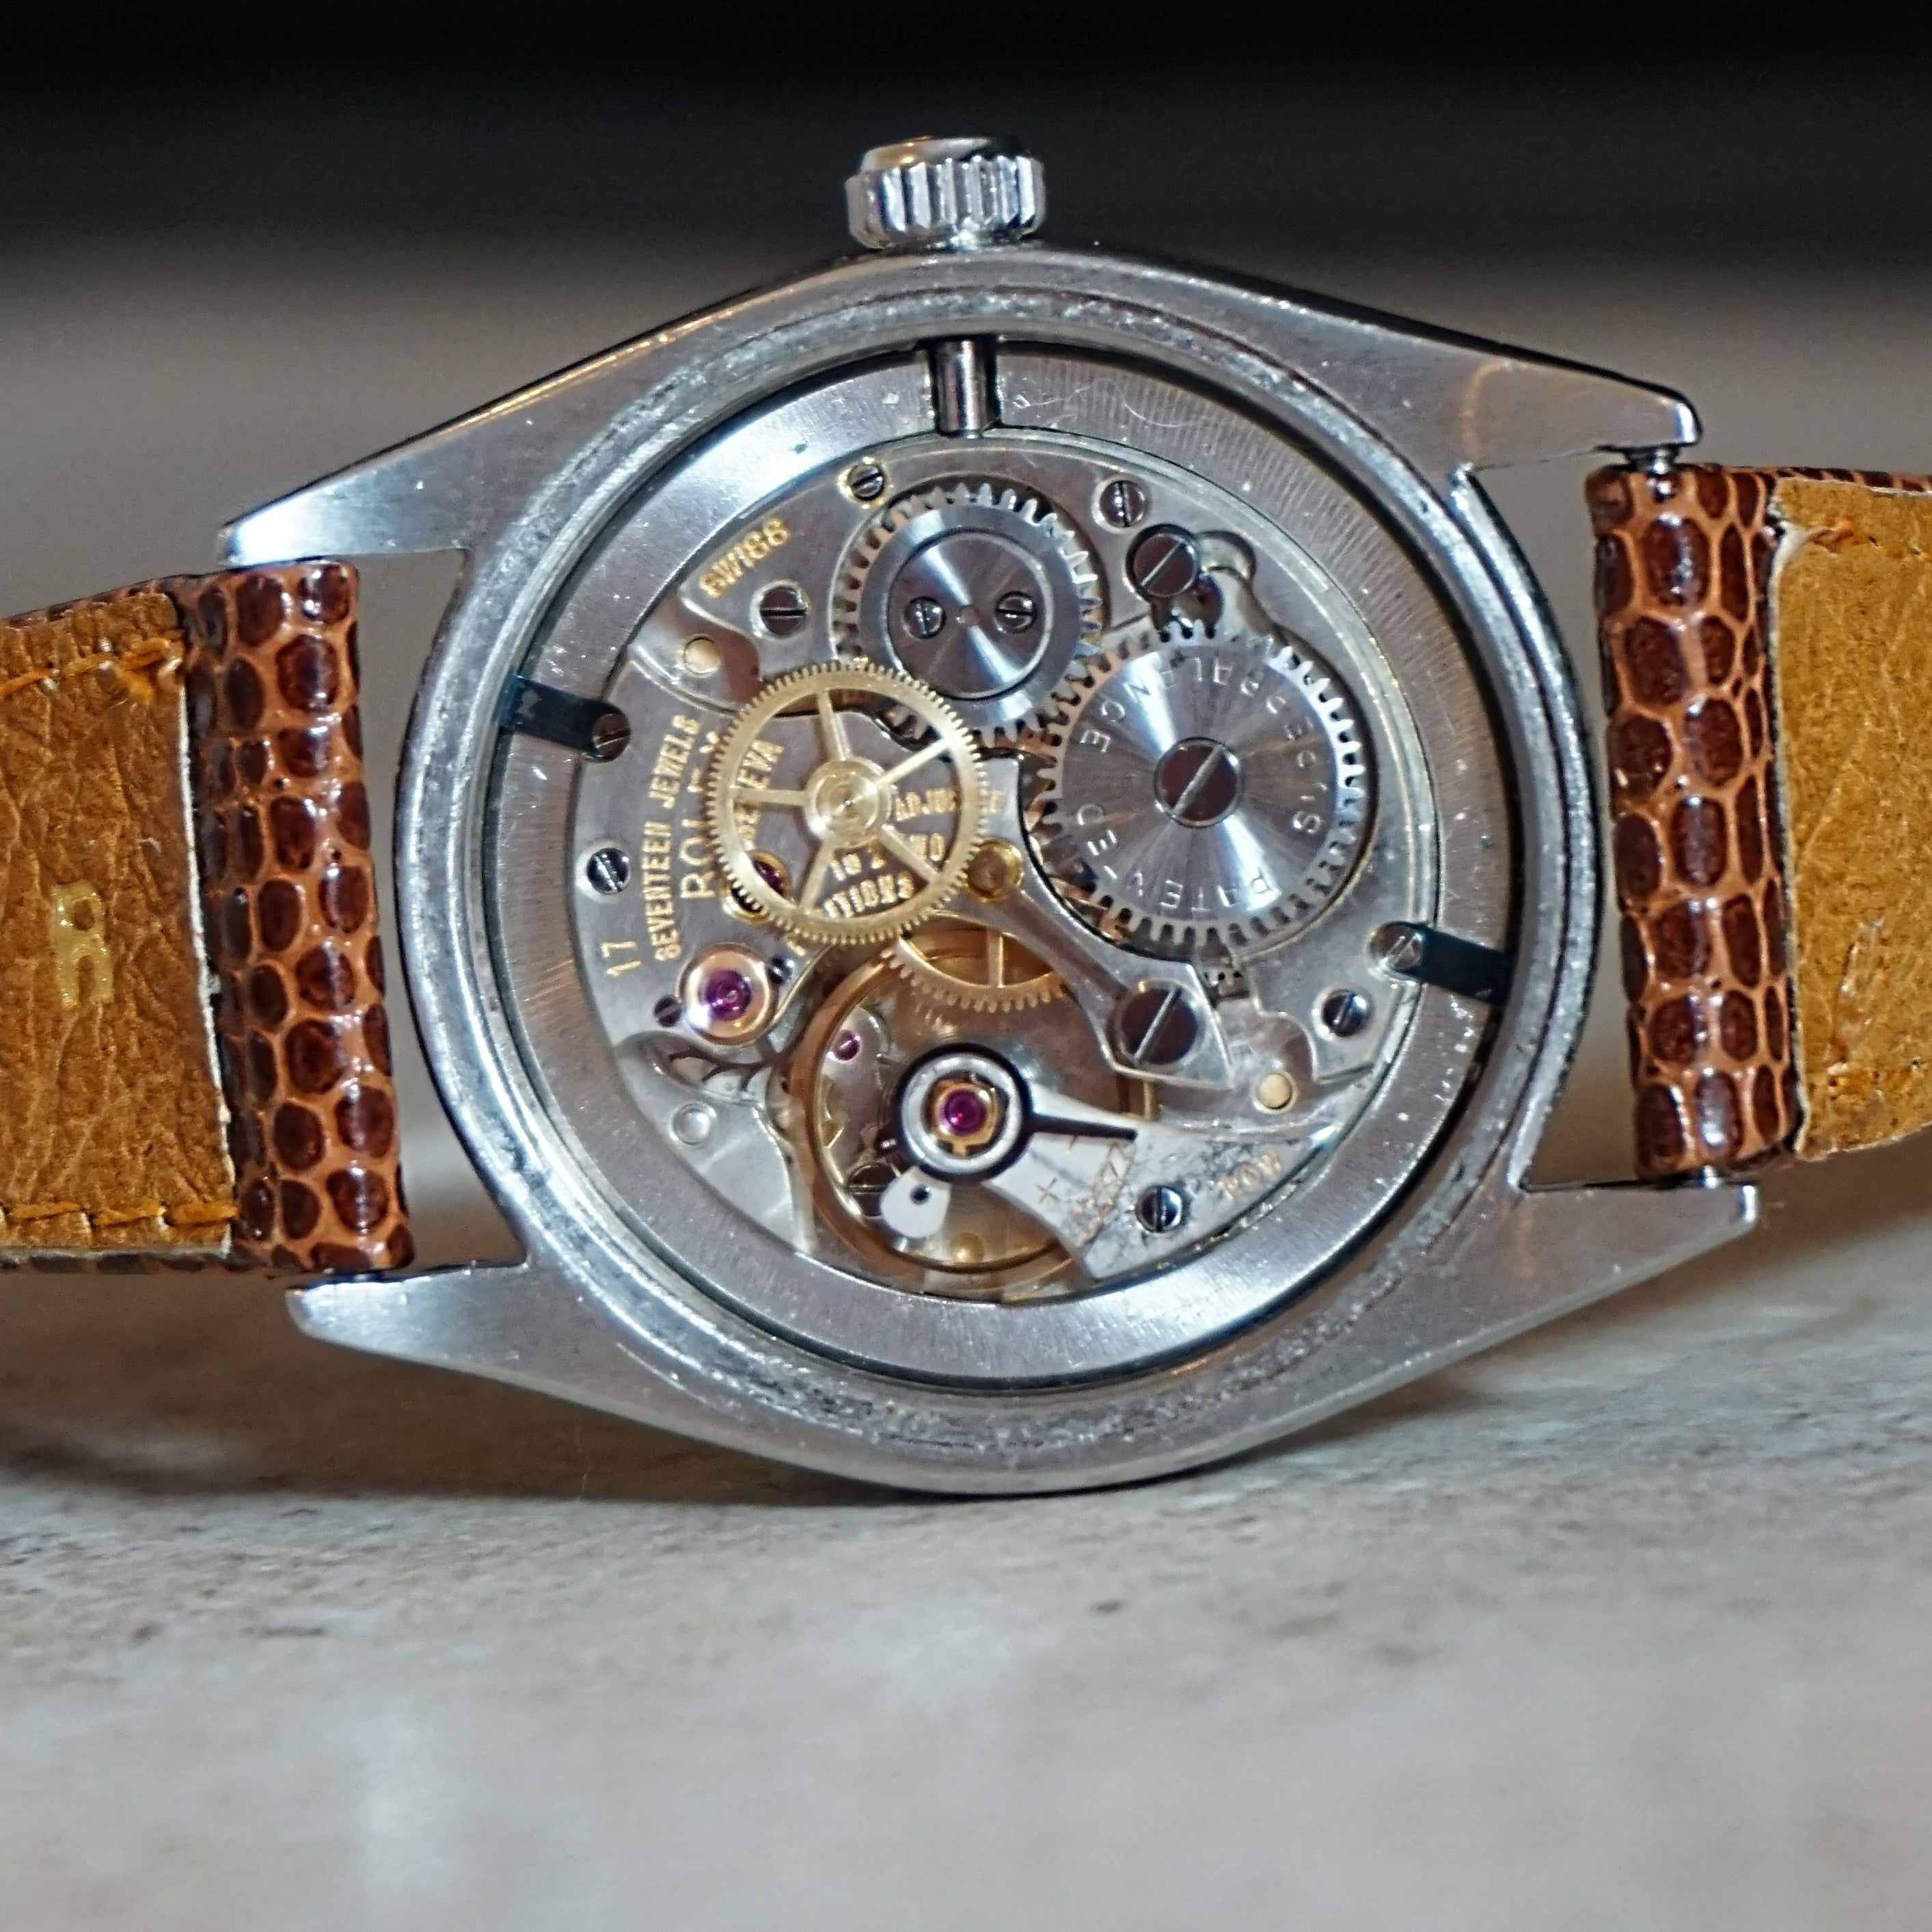 1952 Rolex Wristwatch Ref. 6022 - Immaculate & Serviced Vintage Timepiece